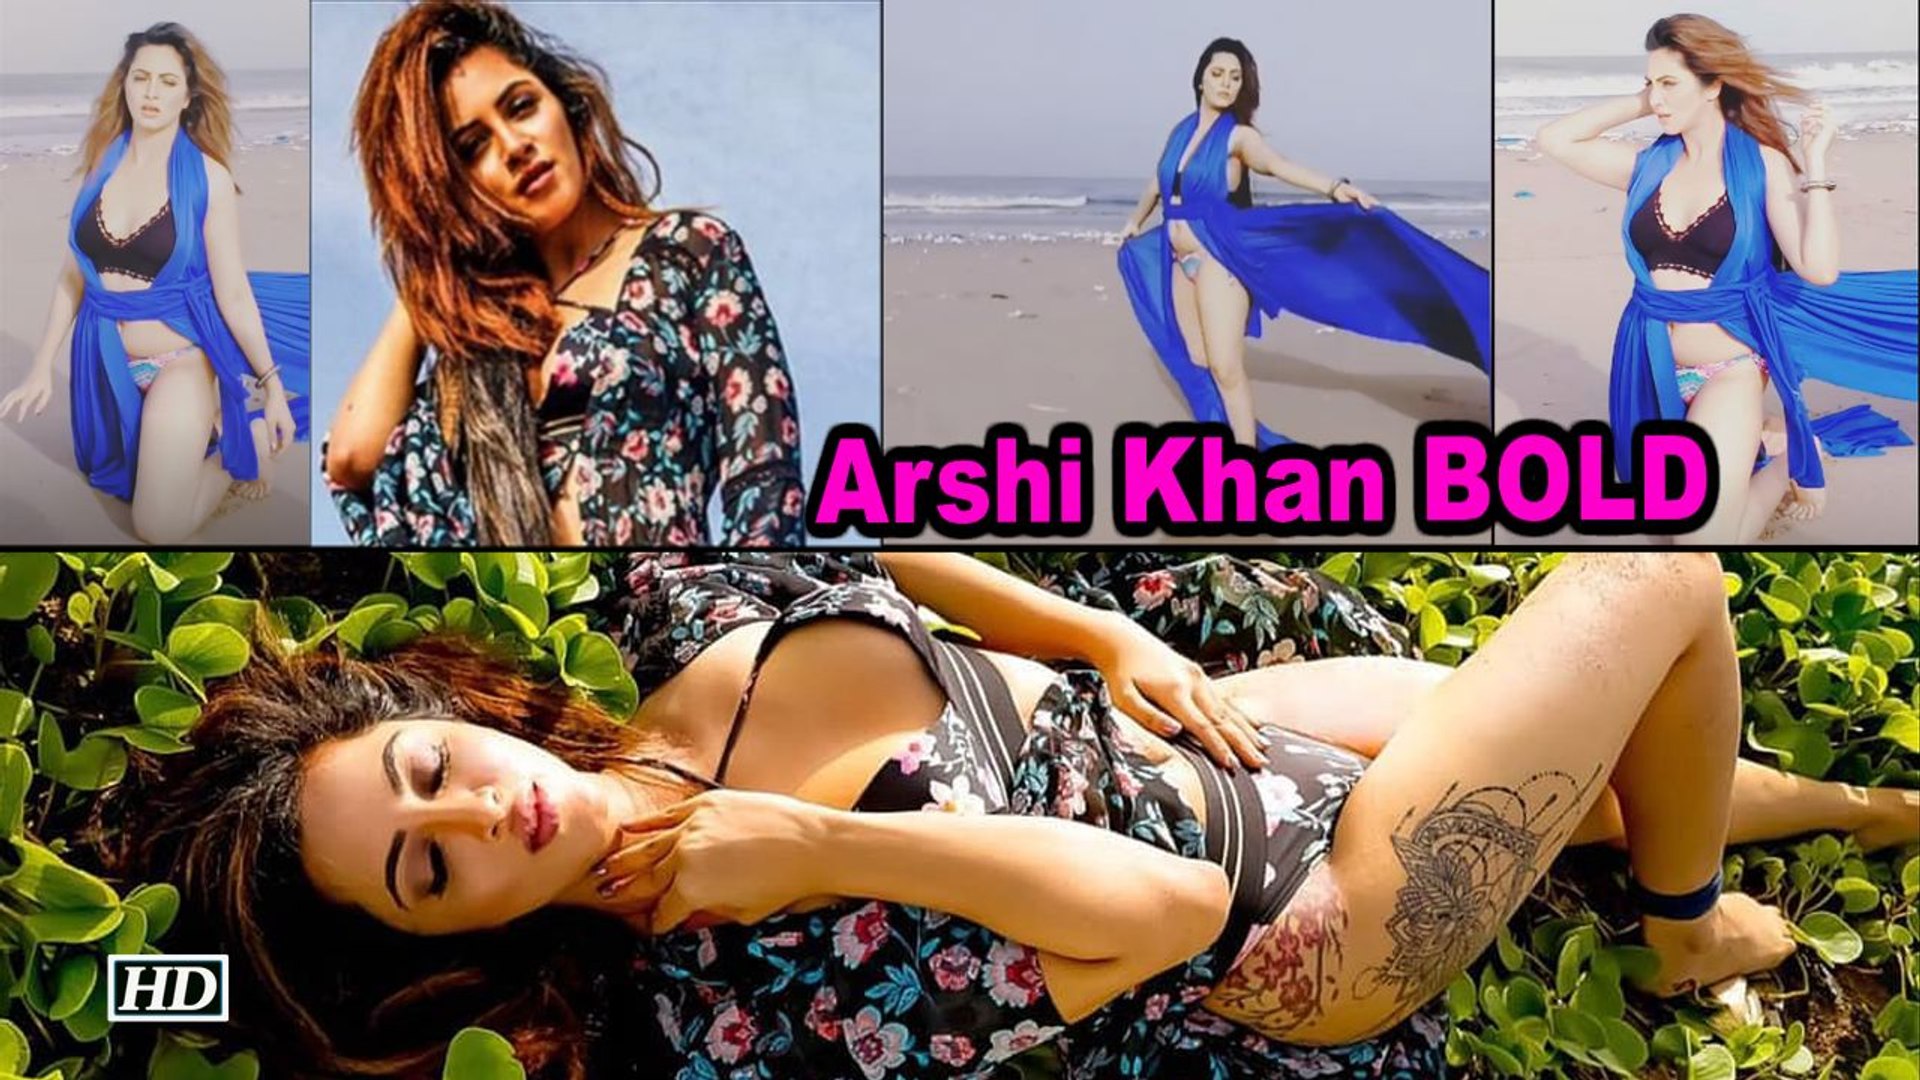 Arshi khan bikini